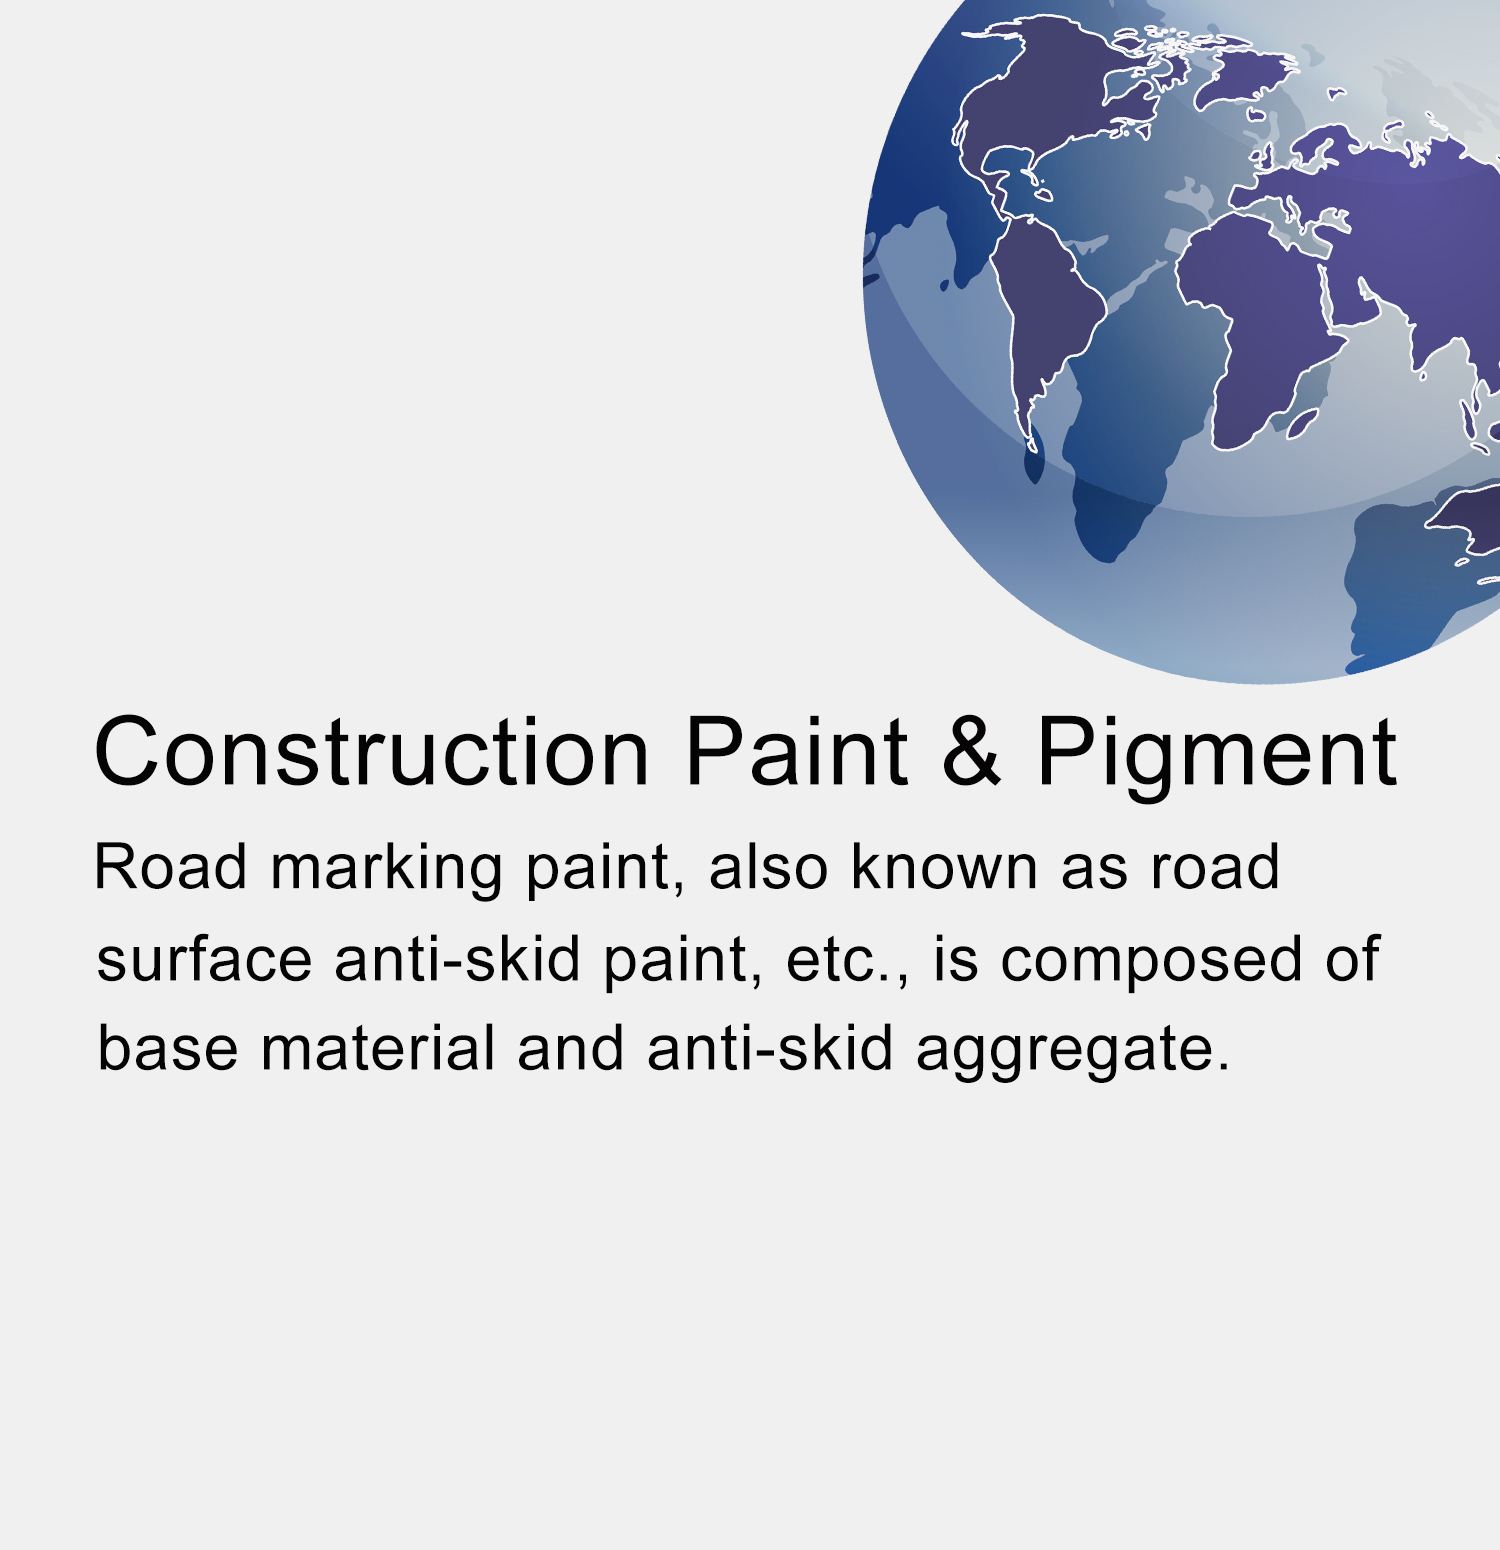 Construction Paint & Pigment